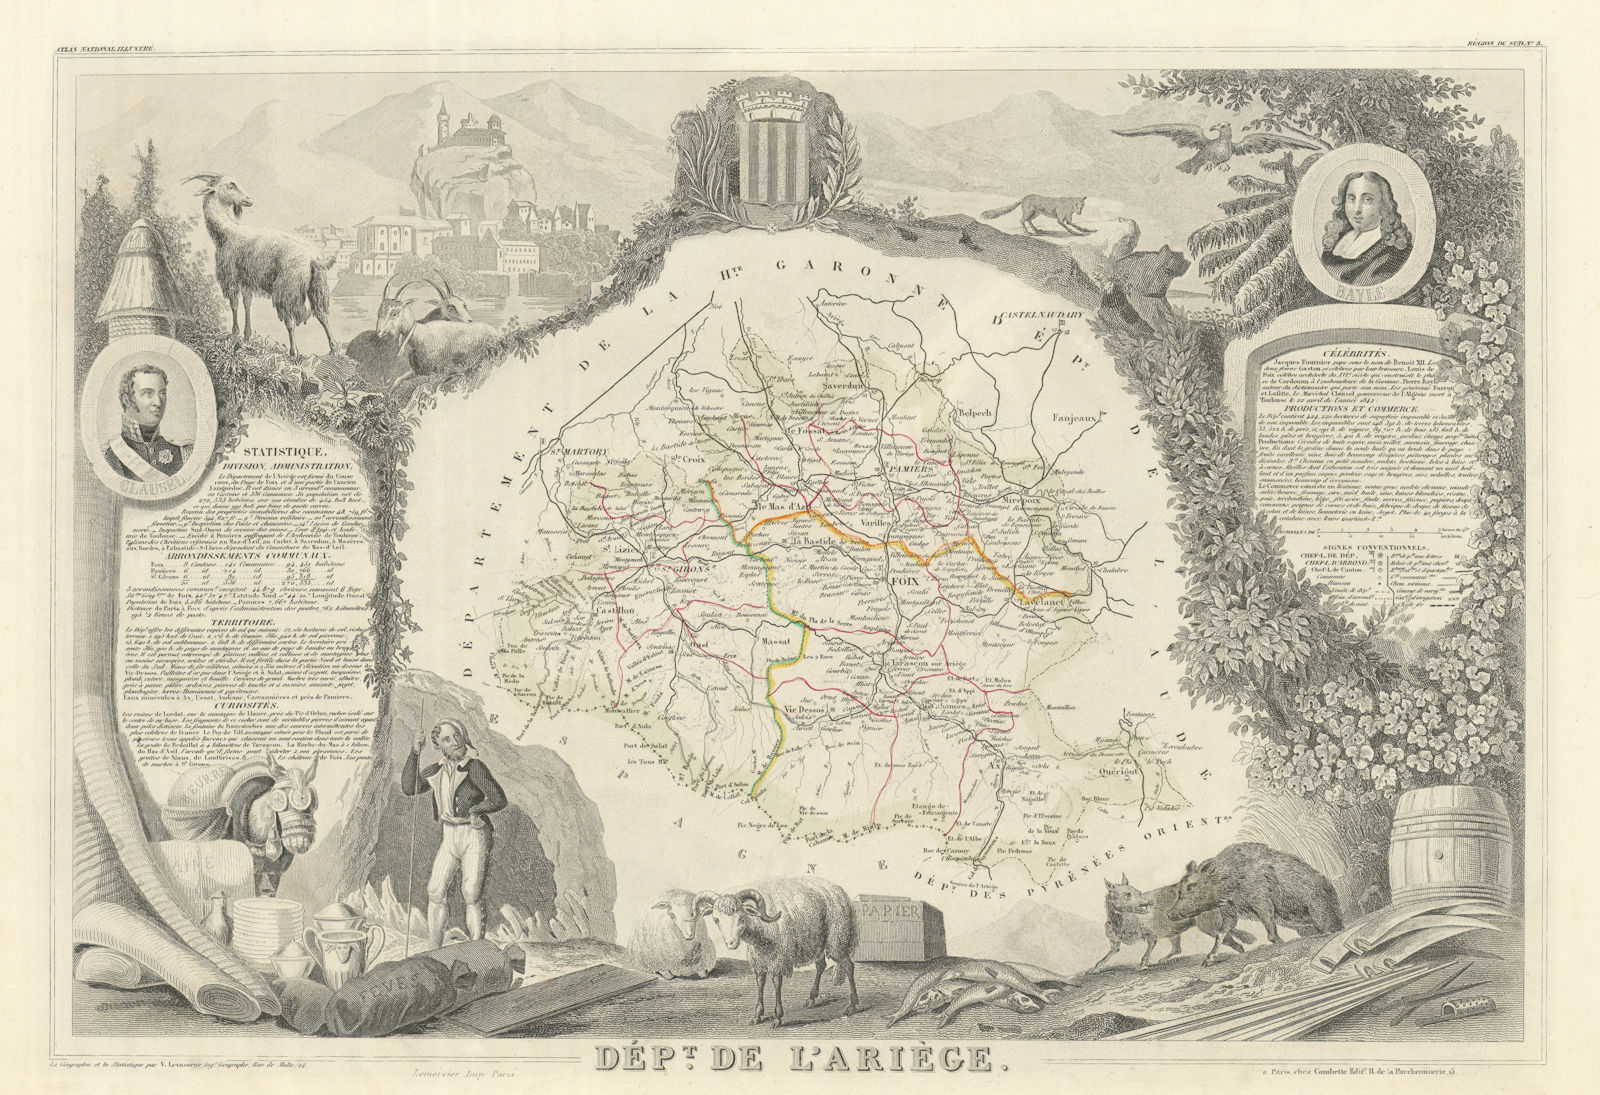 Associate Product Département de l'ARIÈGE. Decorative antique map/carte by Victor LEVASSEUR 1856